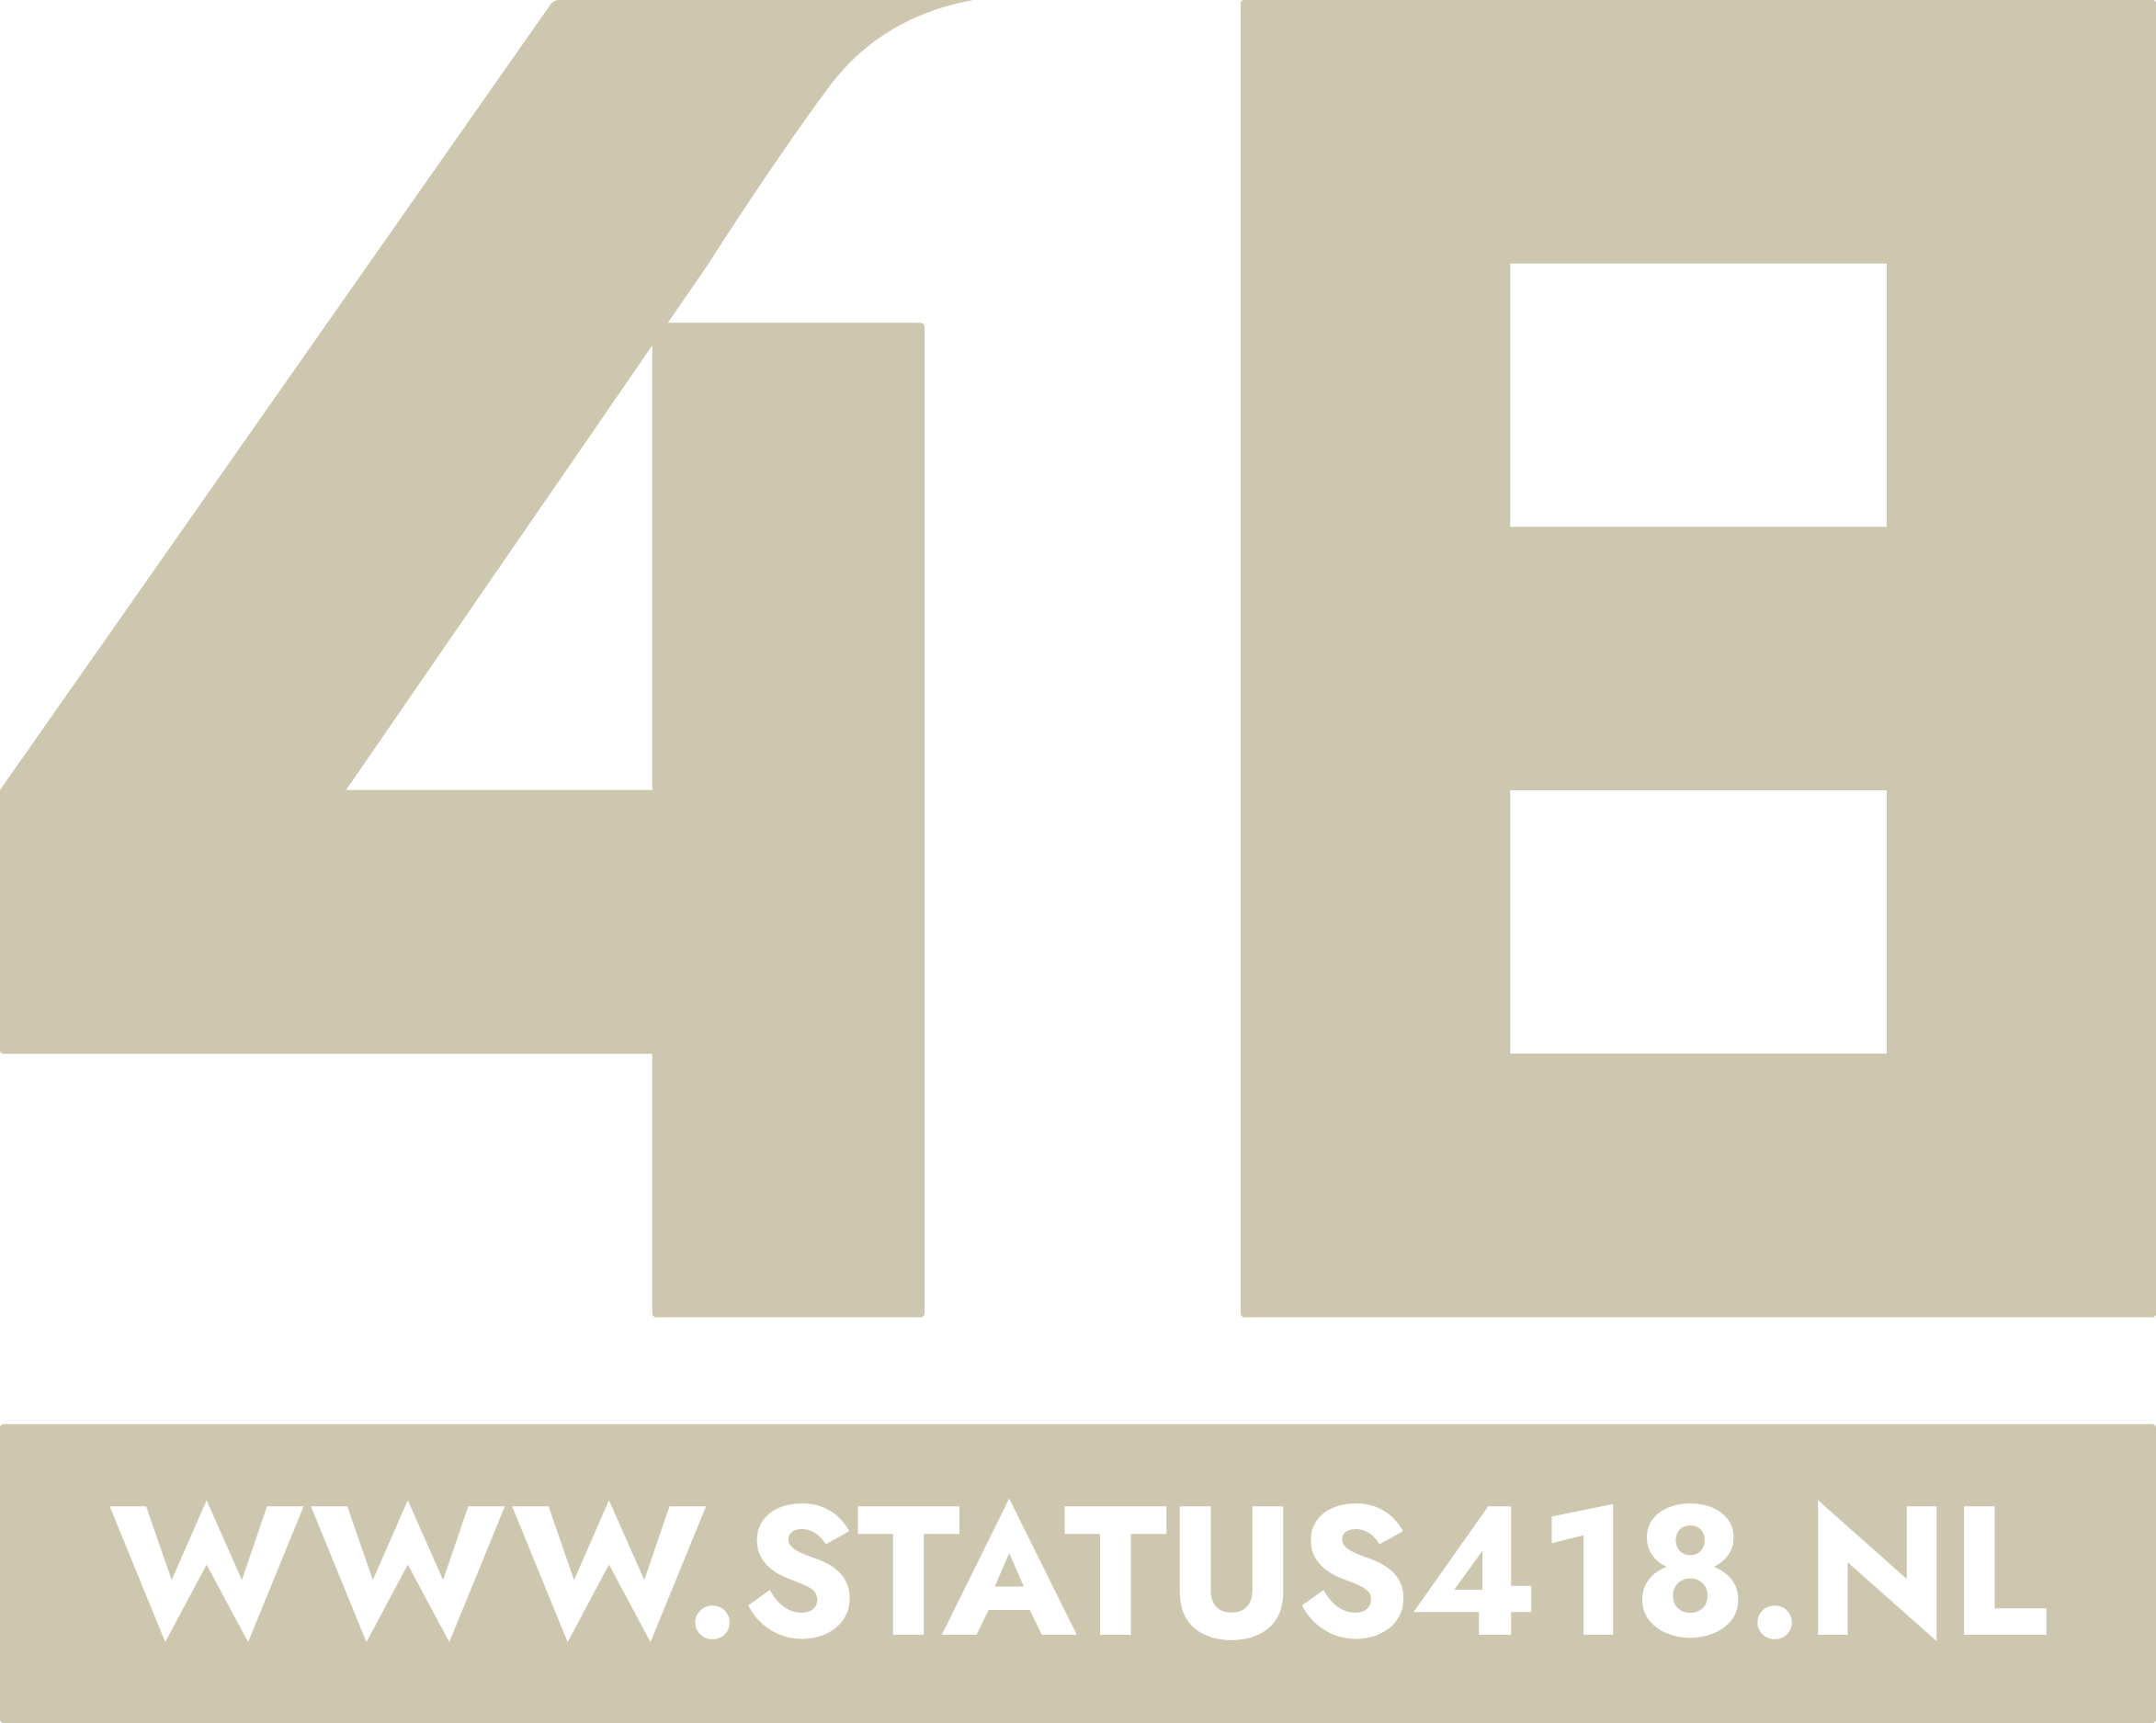 Status 418